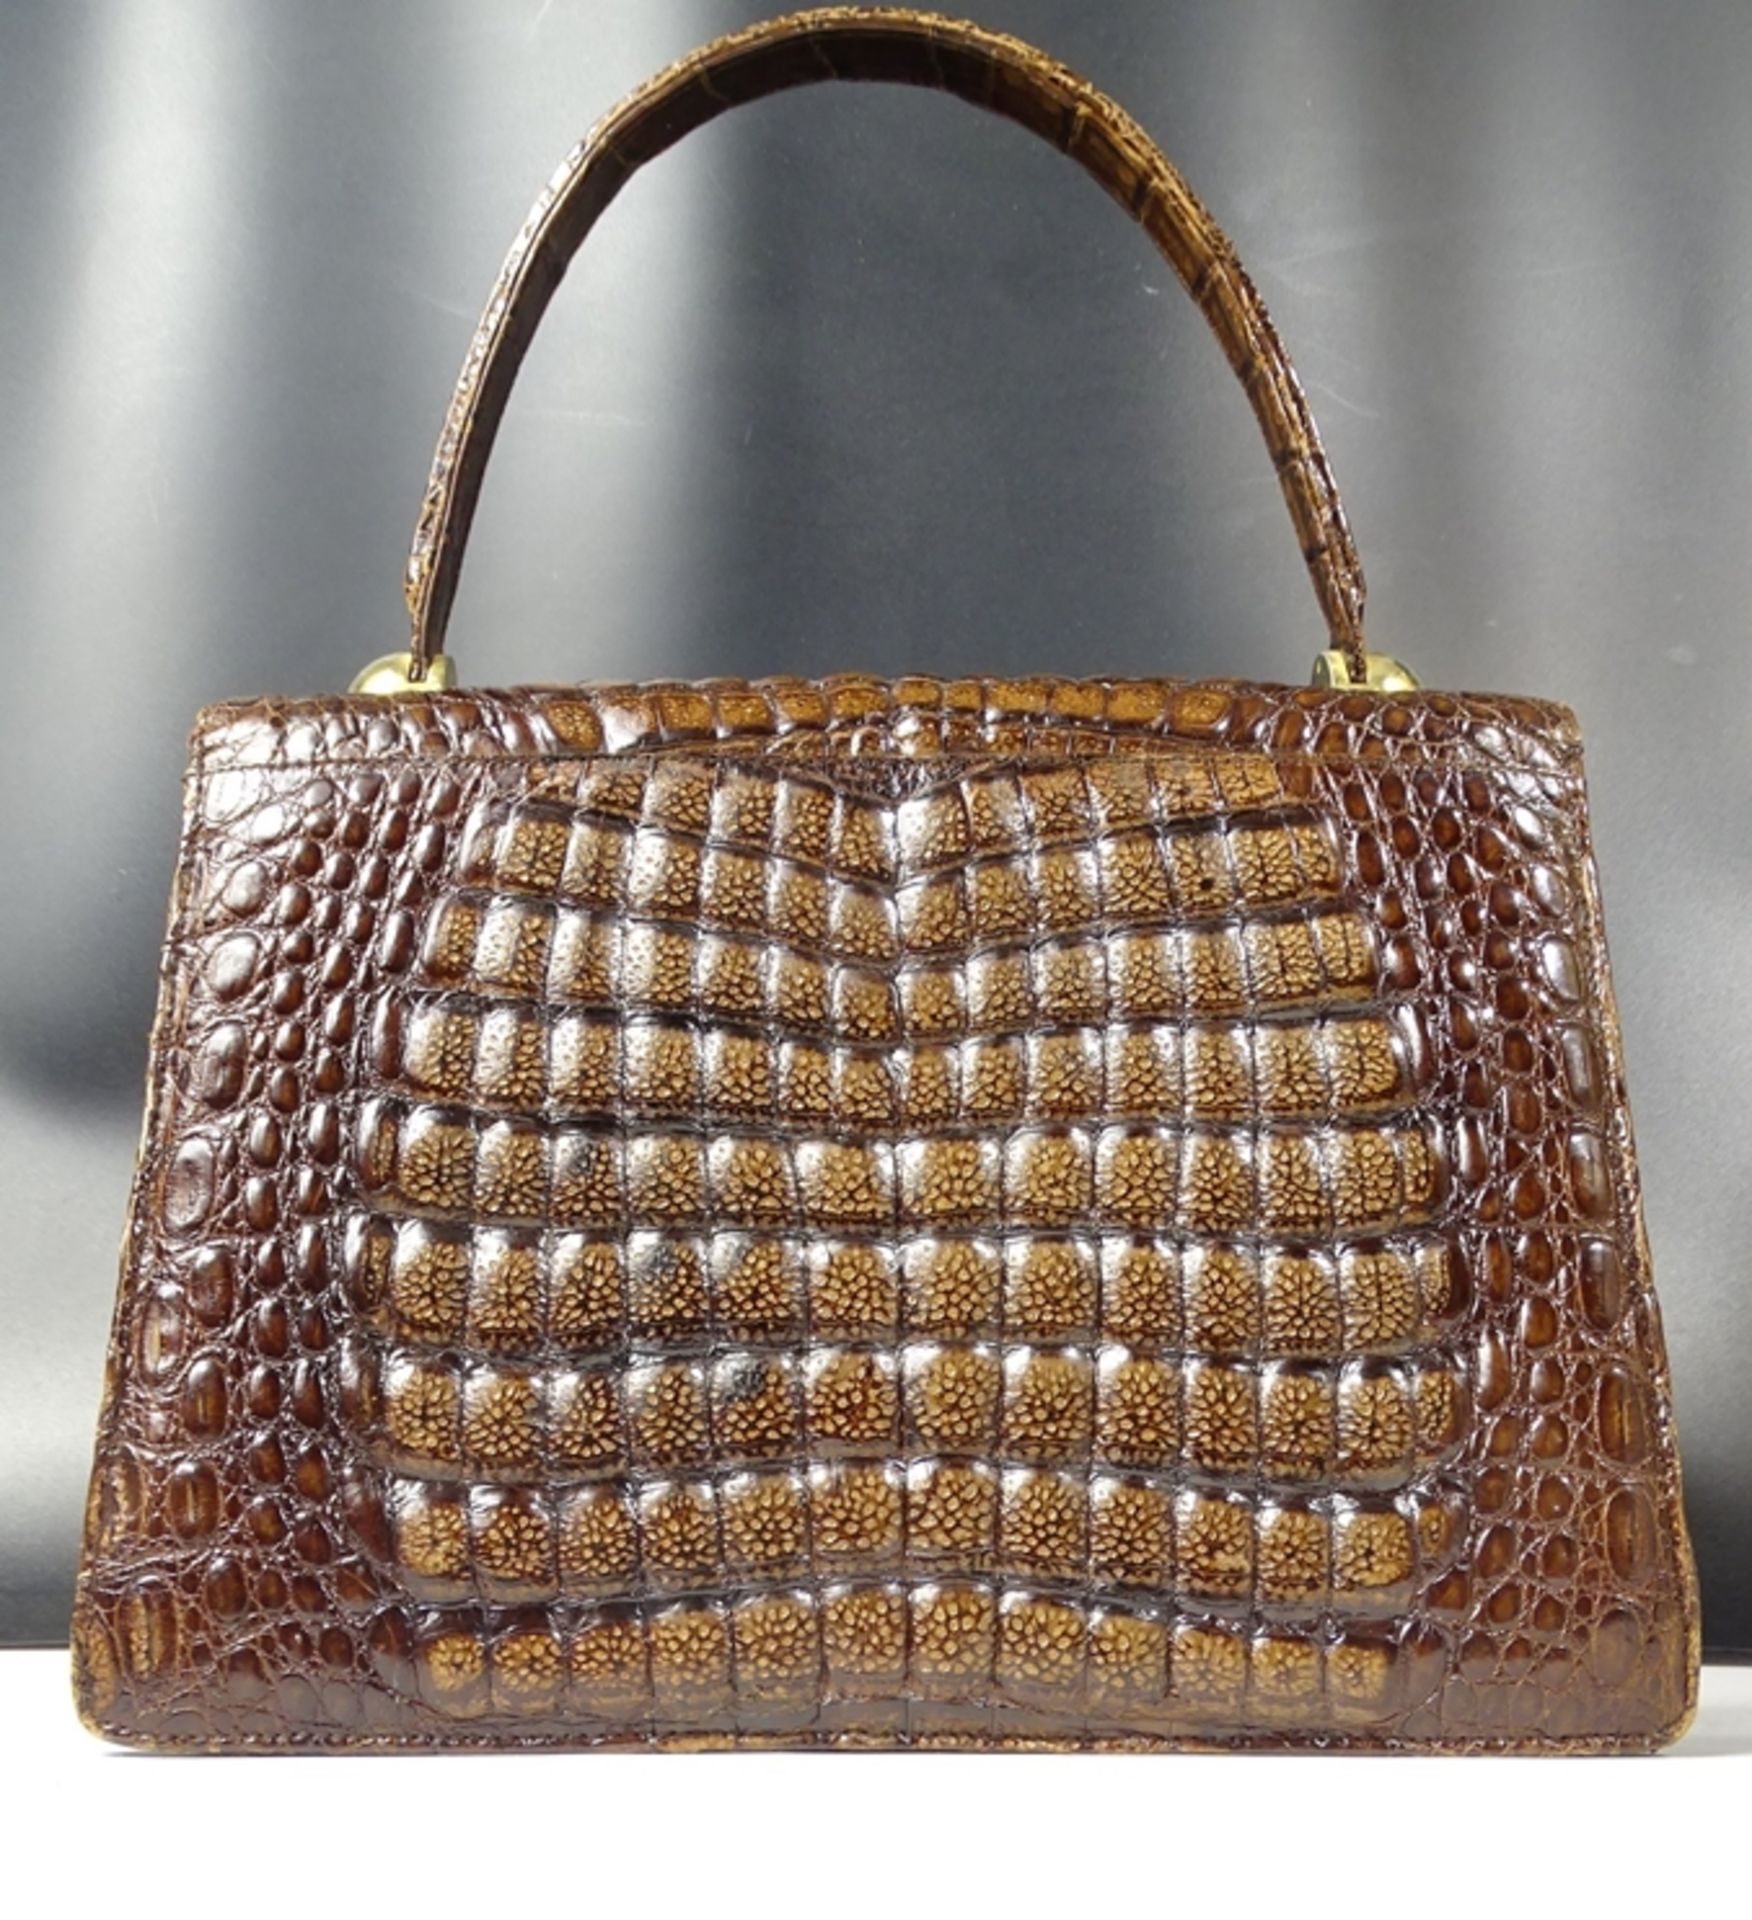 Krokoleder Handtasche mit Geldbeutel, 21x29cm - Bild 5 aus 10